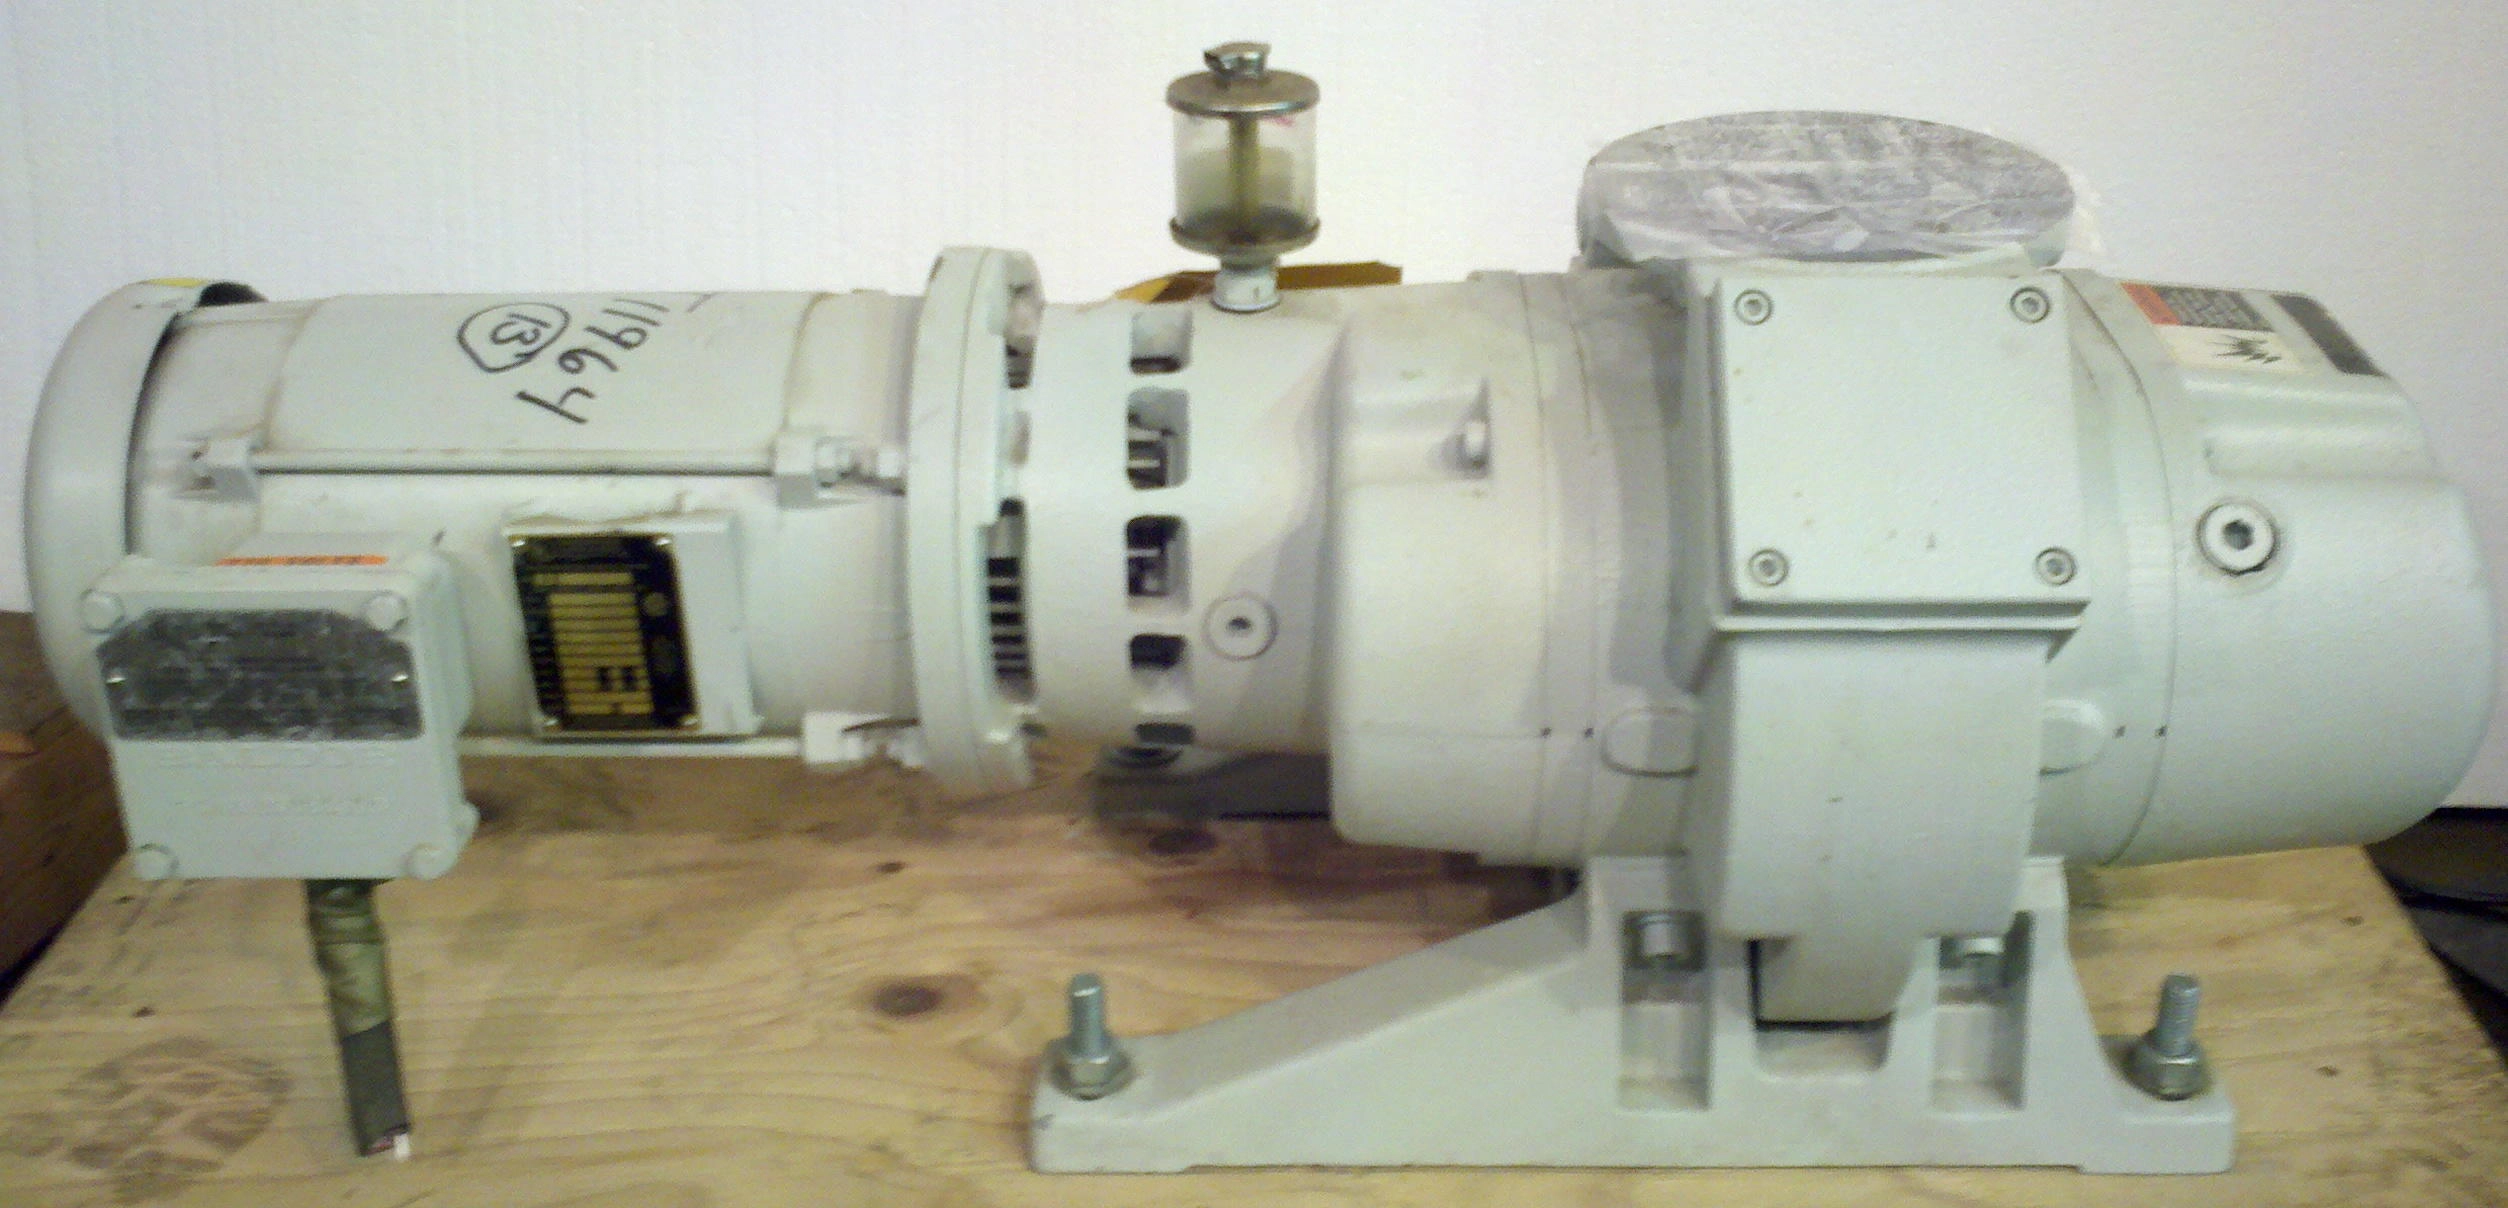 Leybold WAU251 179 CFM 3 phase, X-proof motor. Last used with PFPE